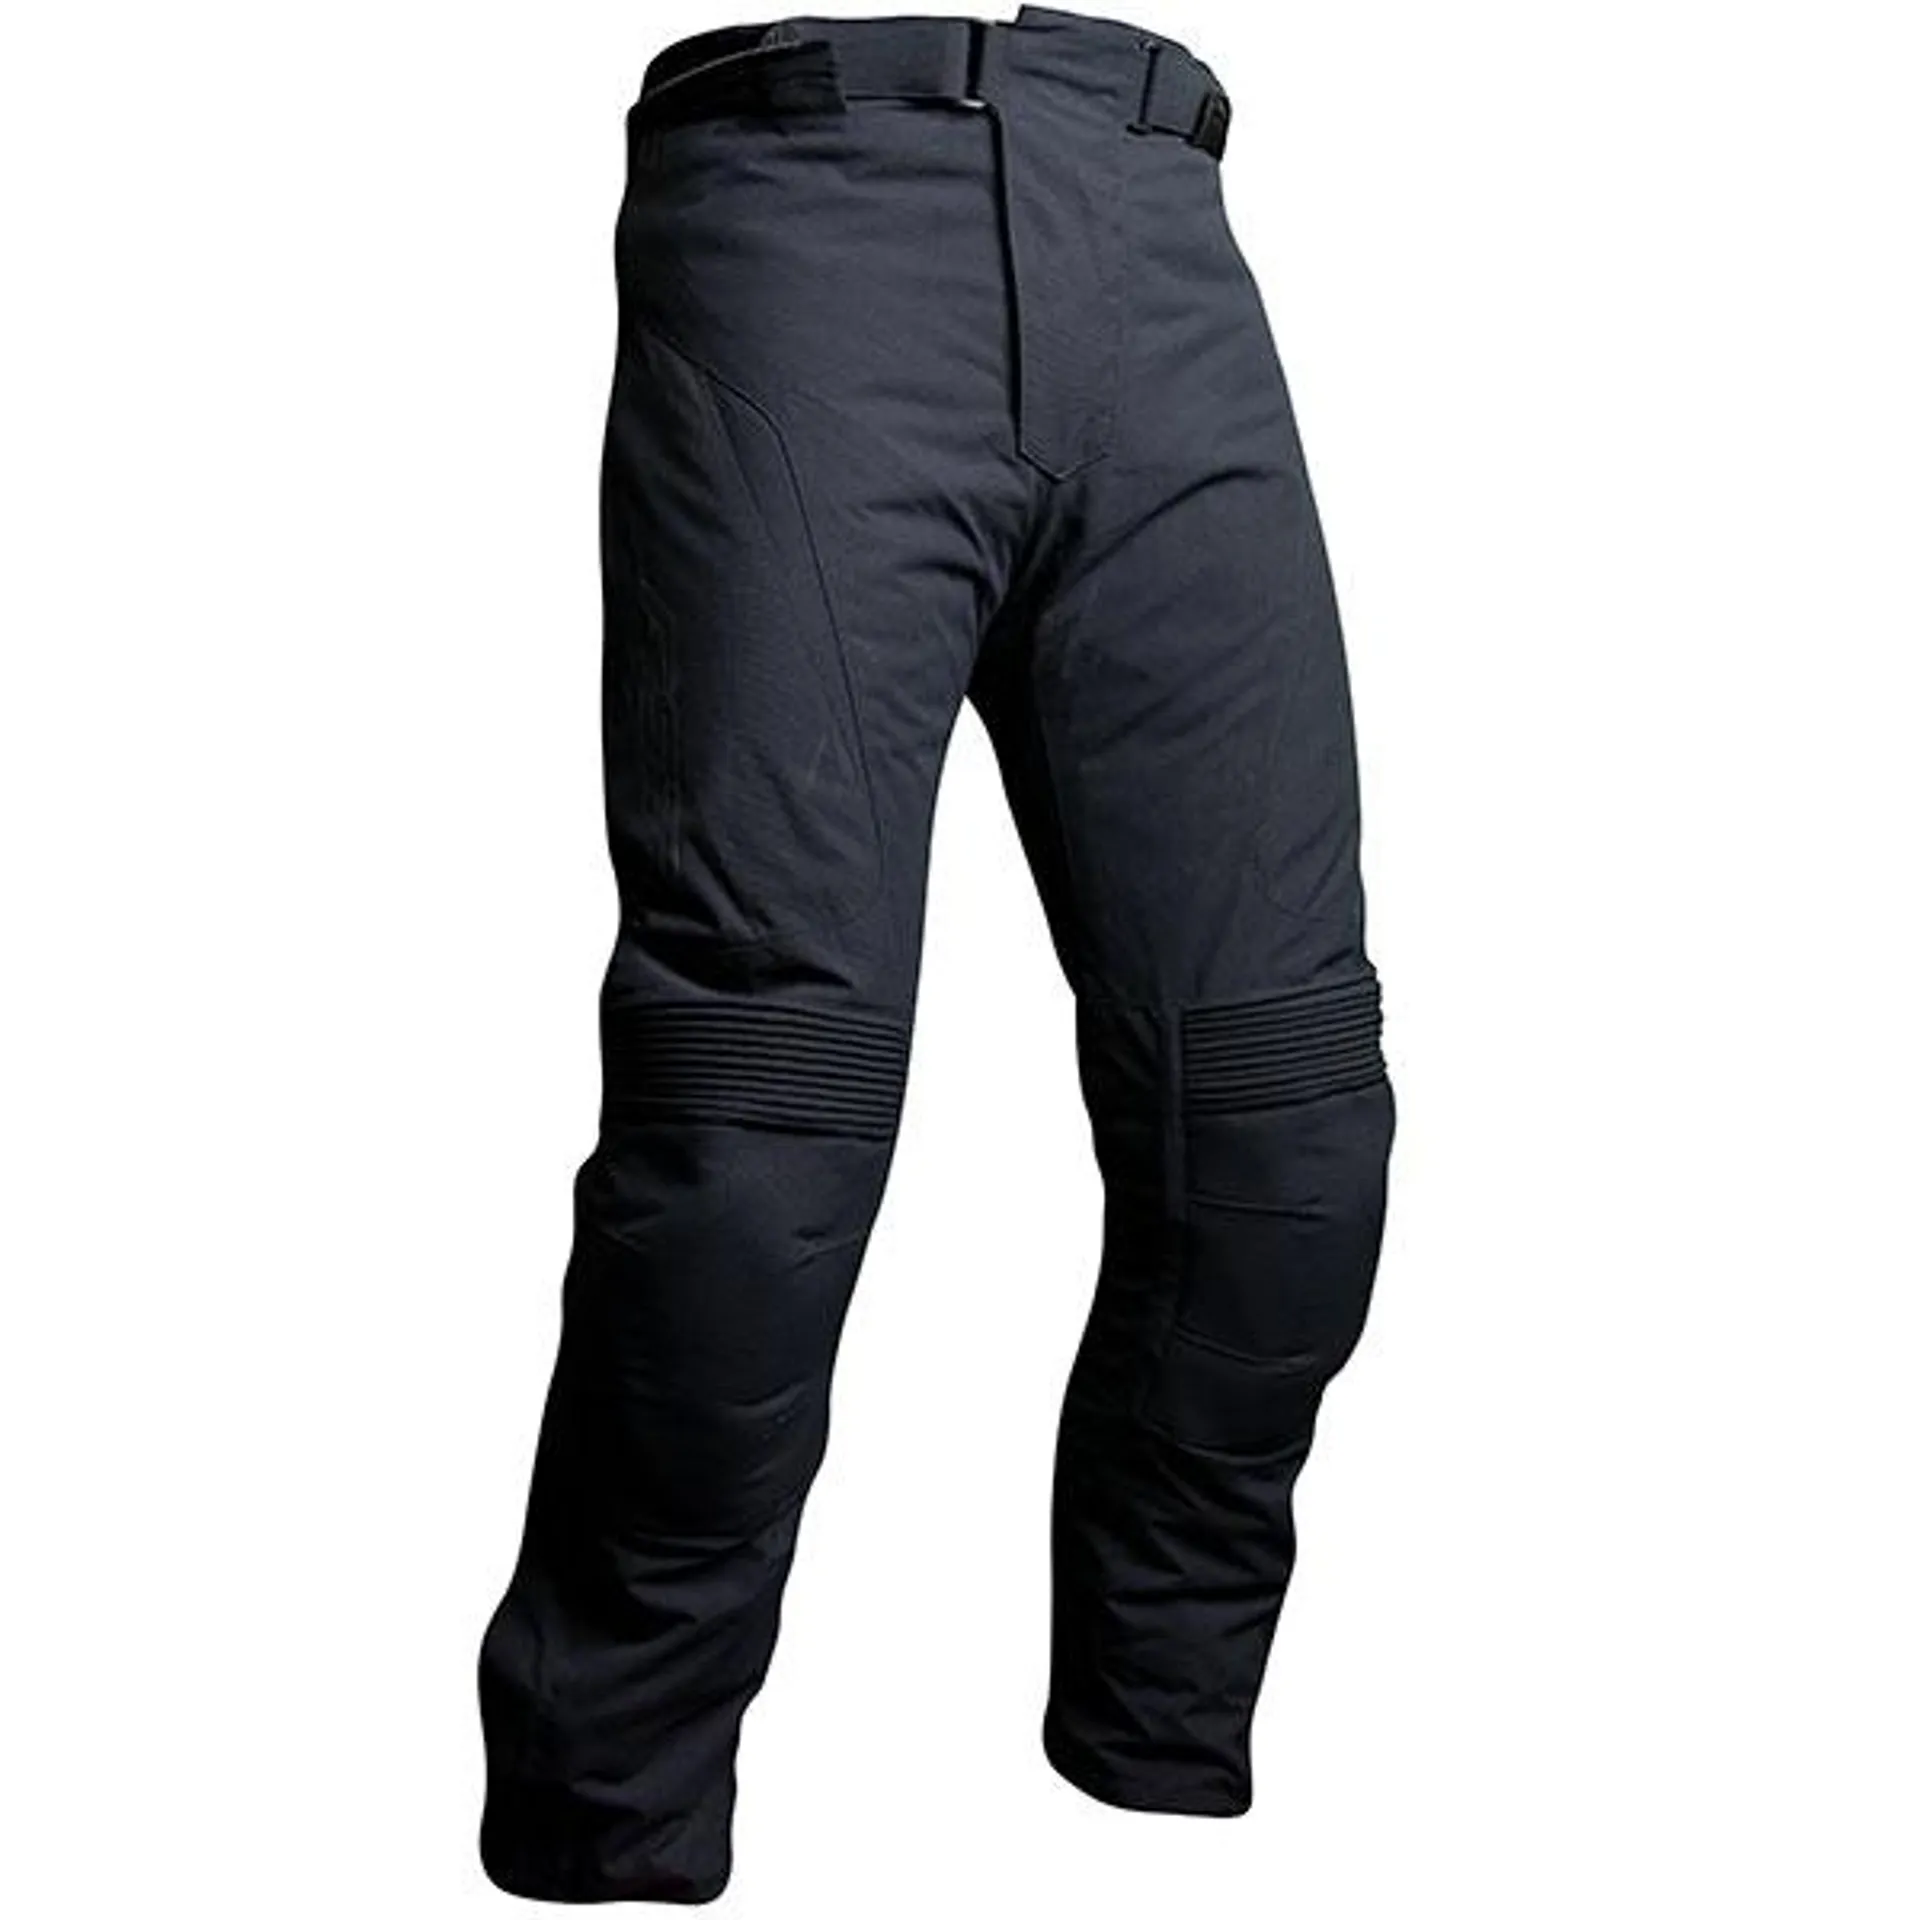 RST GT CE Textile Jeans - Black / Black